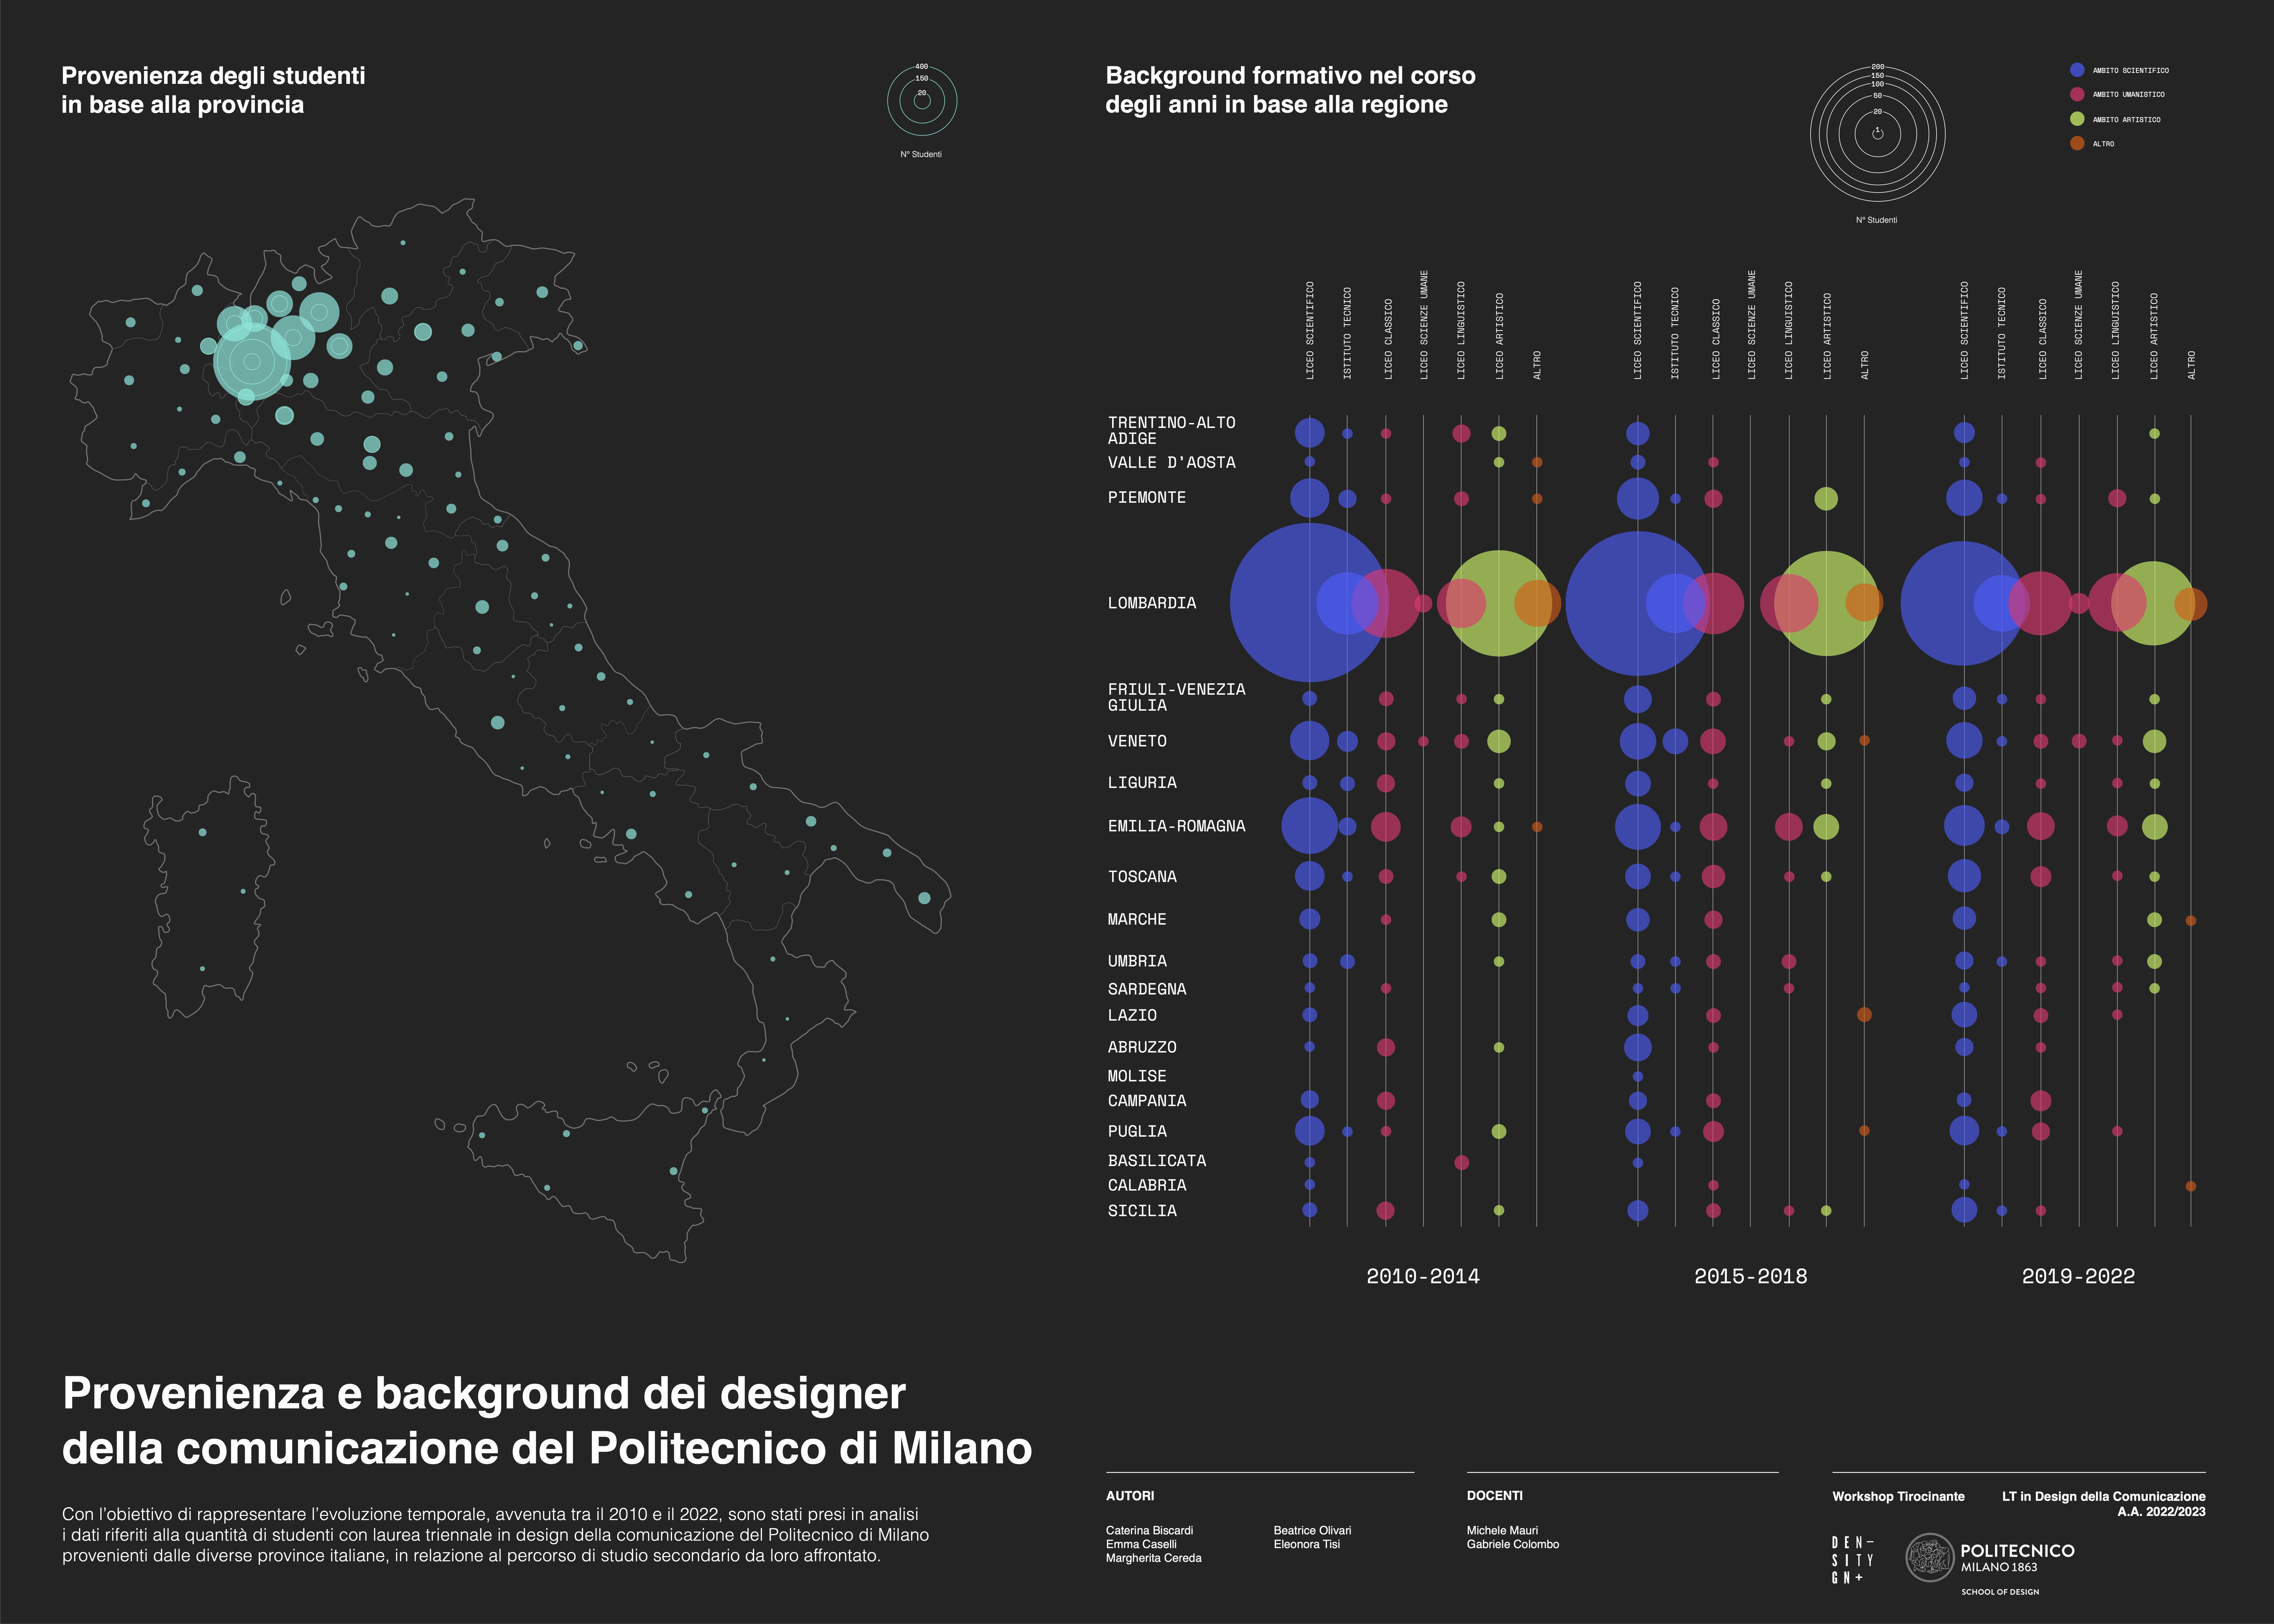 Provenienza e background dei designer della comunicazione del Politecnico di Milano